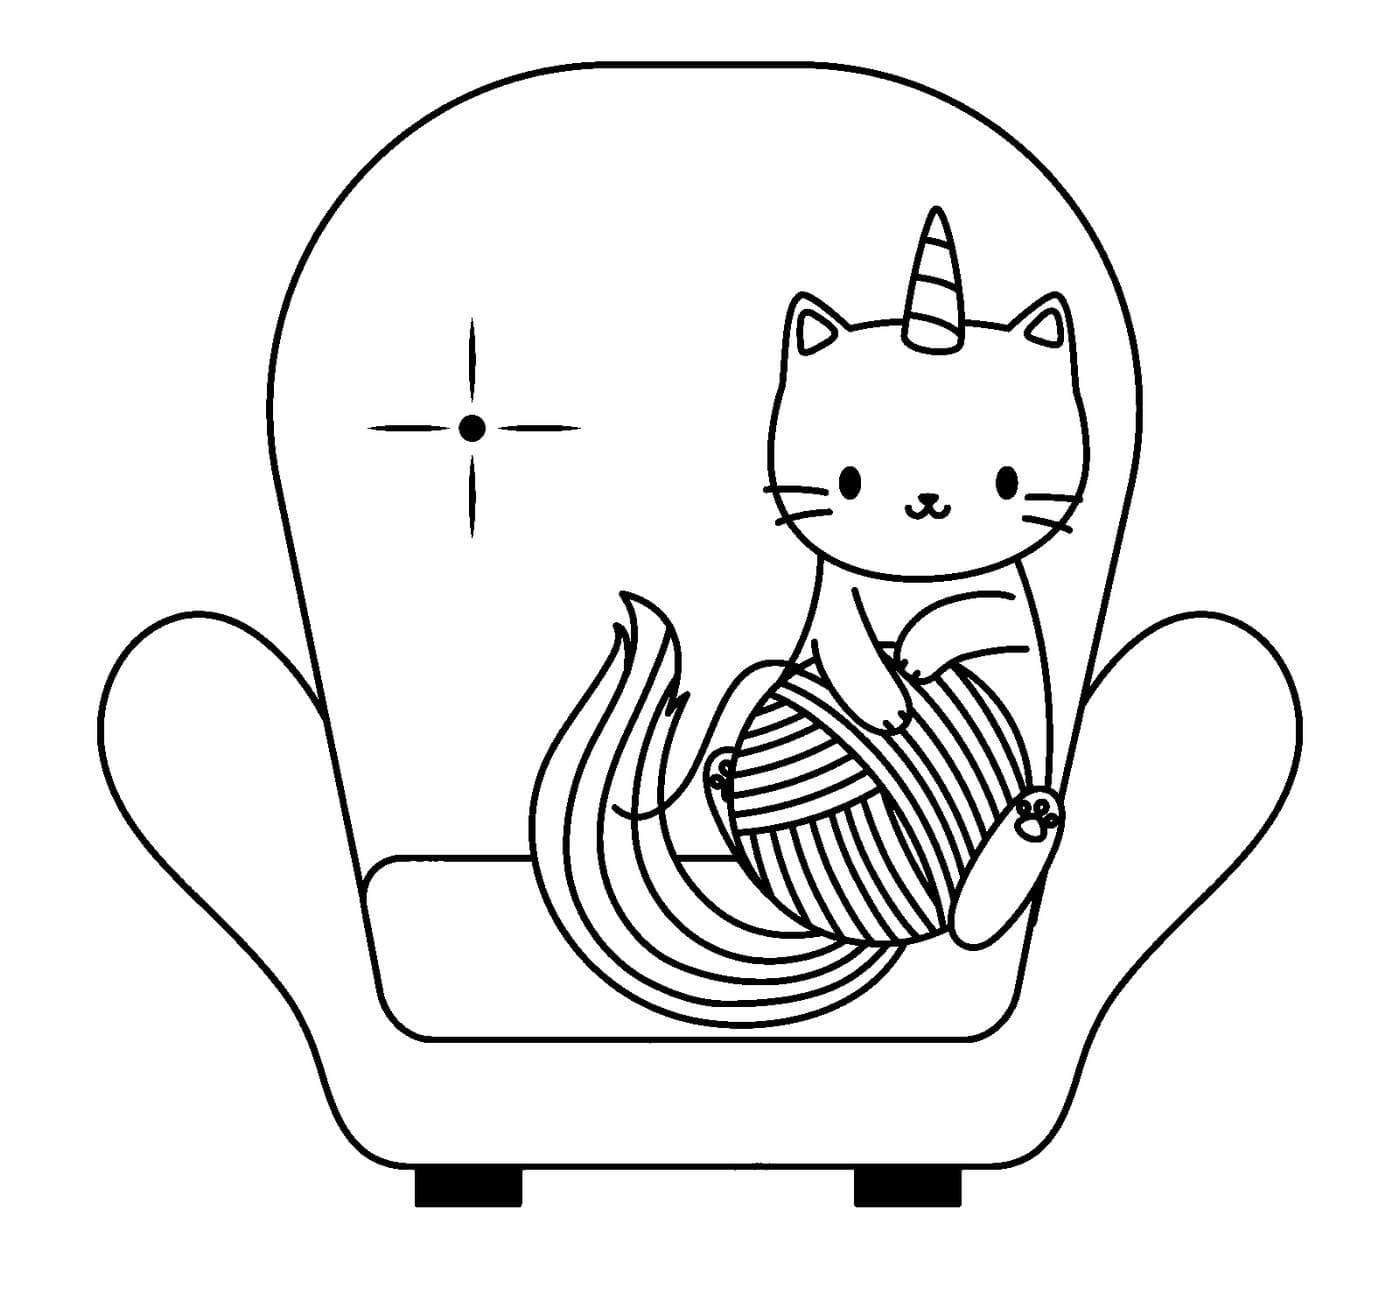 Ausmalbild Einhorn-Katze mit einem Glomerulum